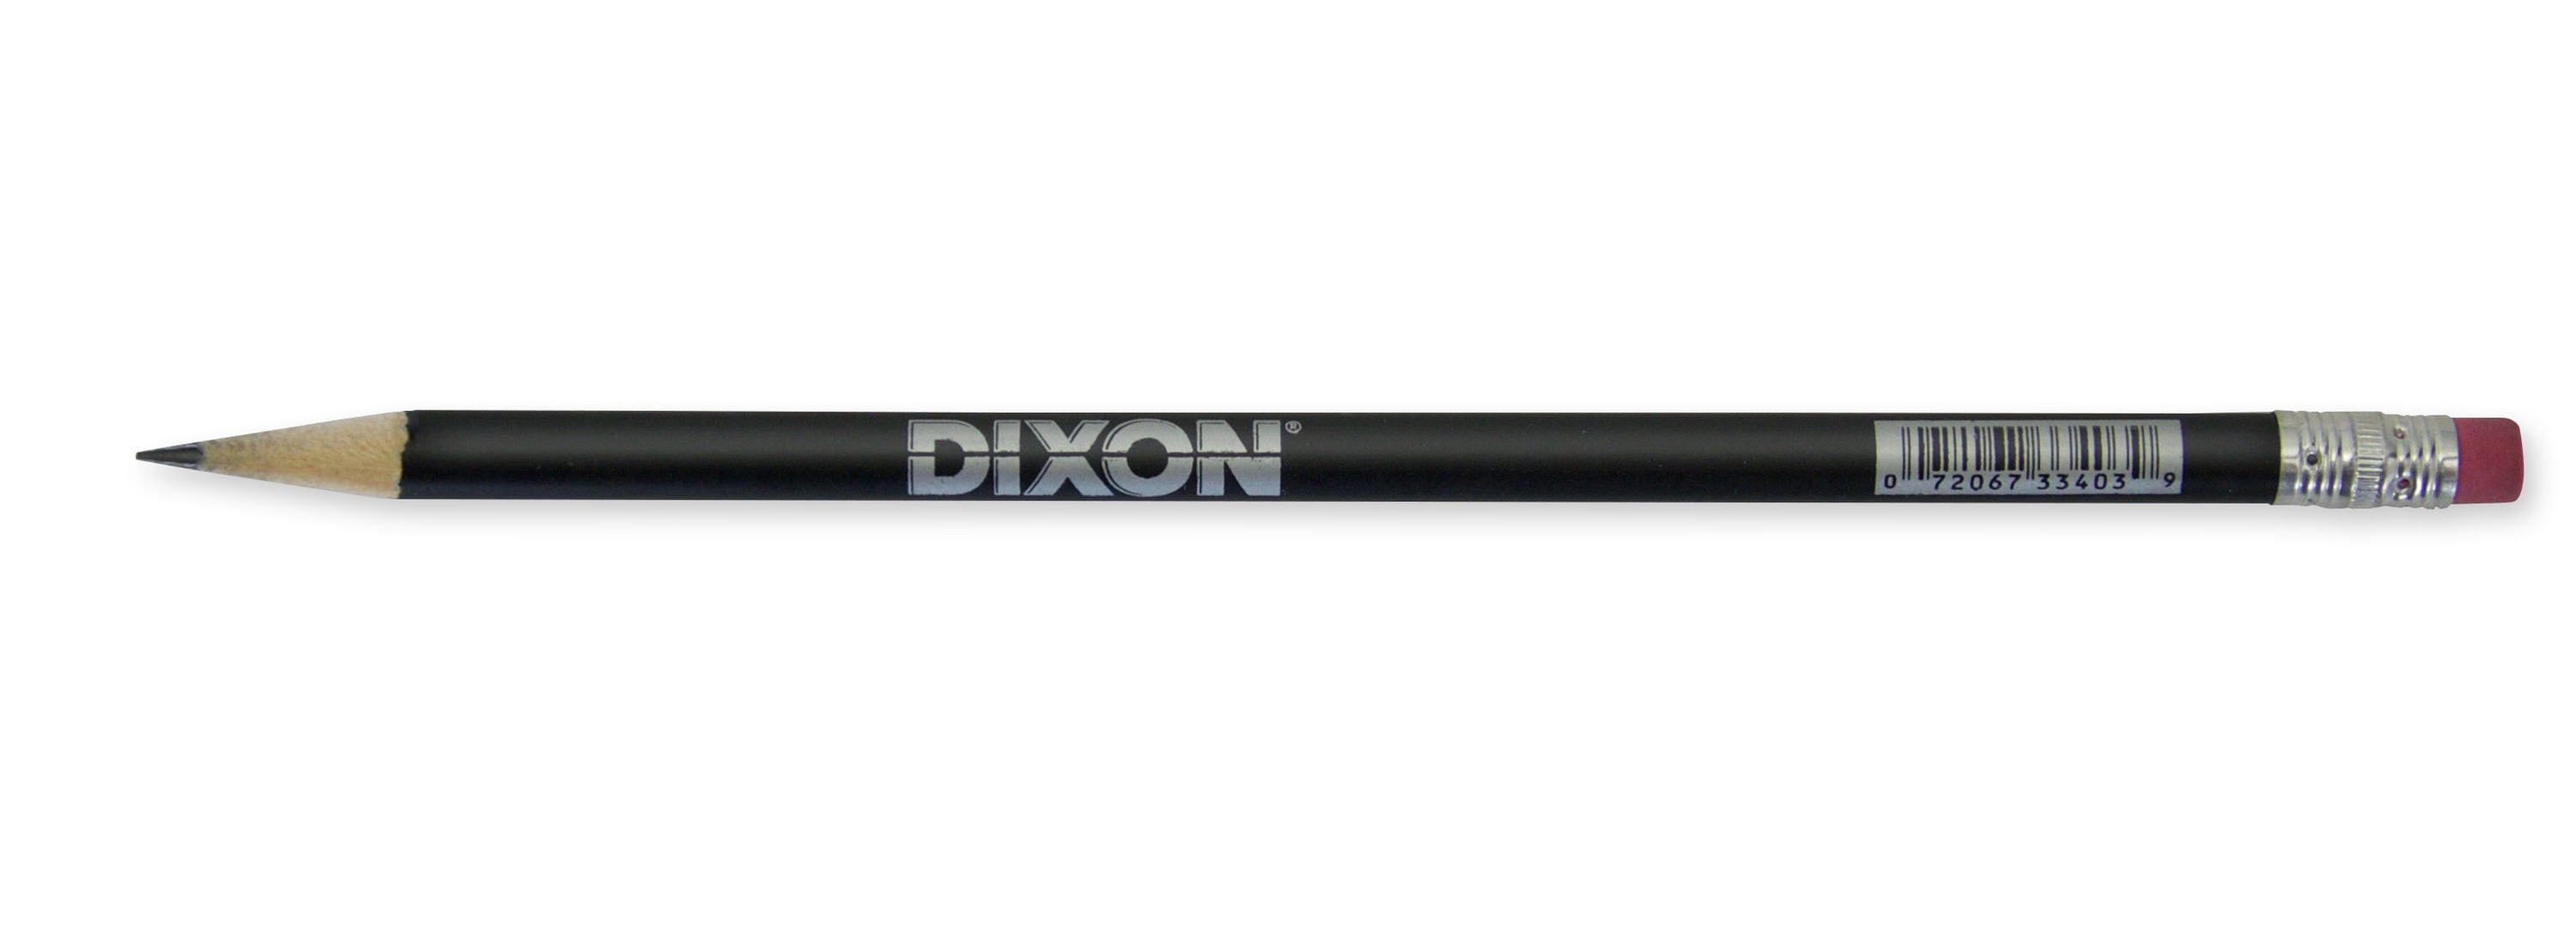 Dixon Trend Porous Point Pens, 12 Count, Black